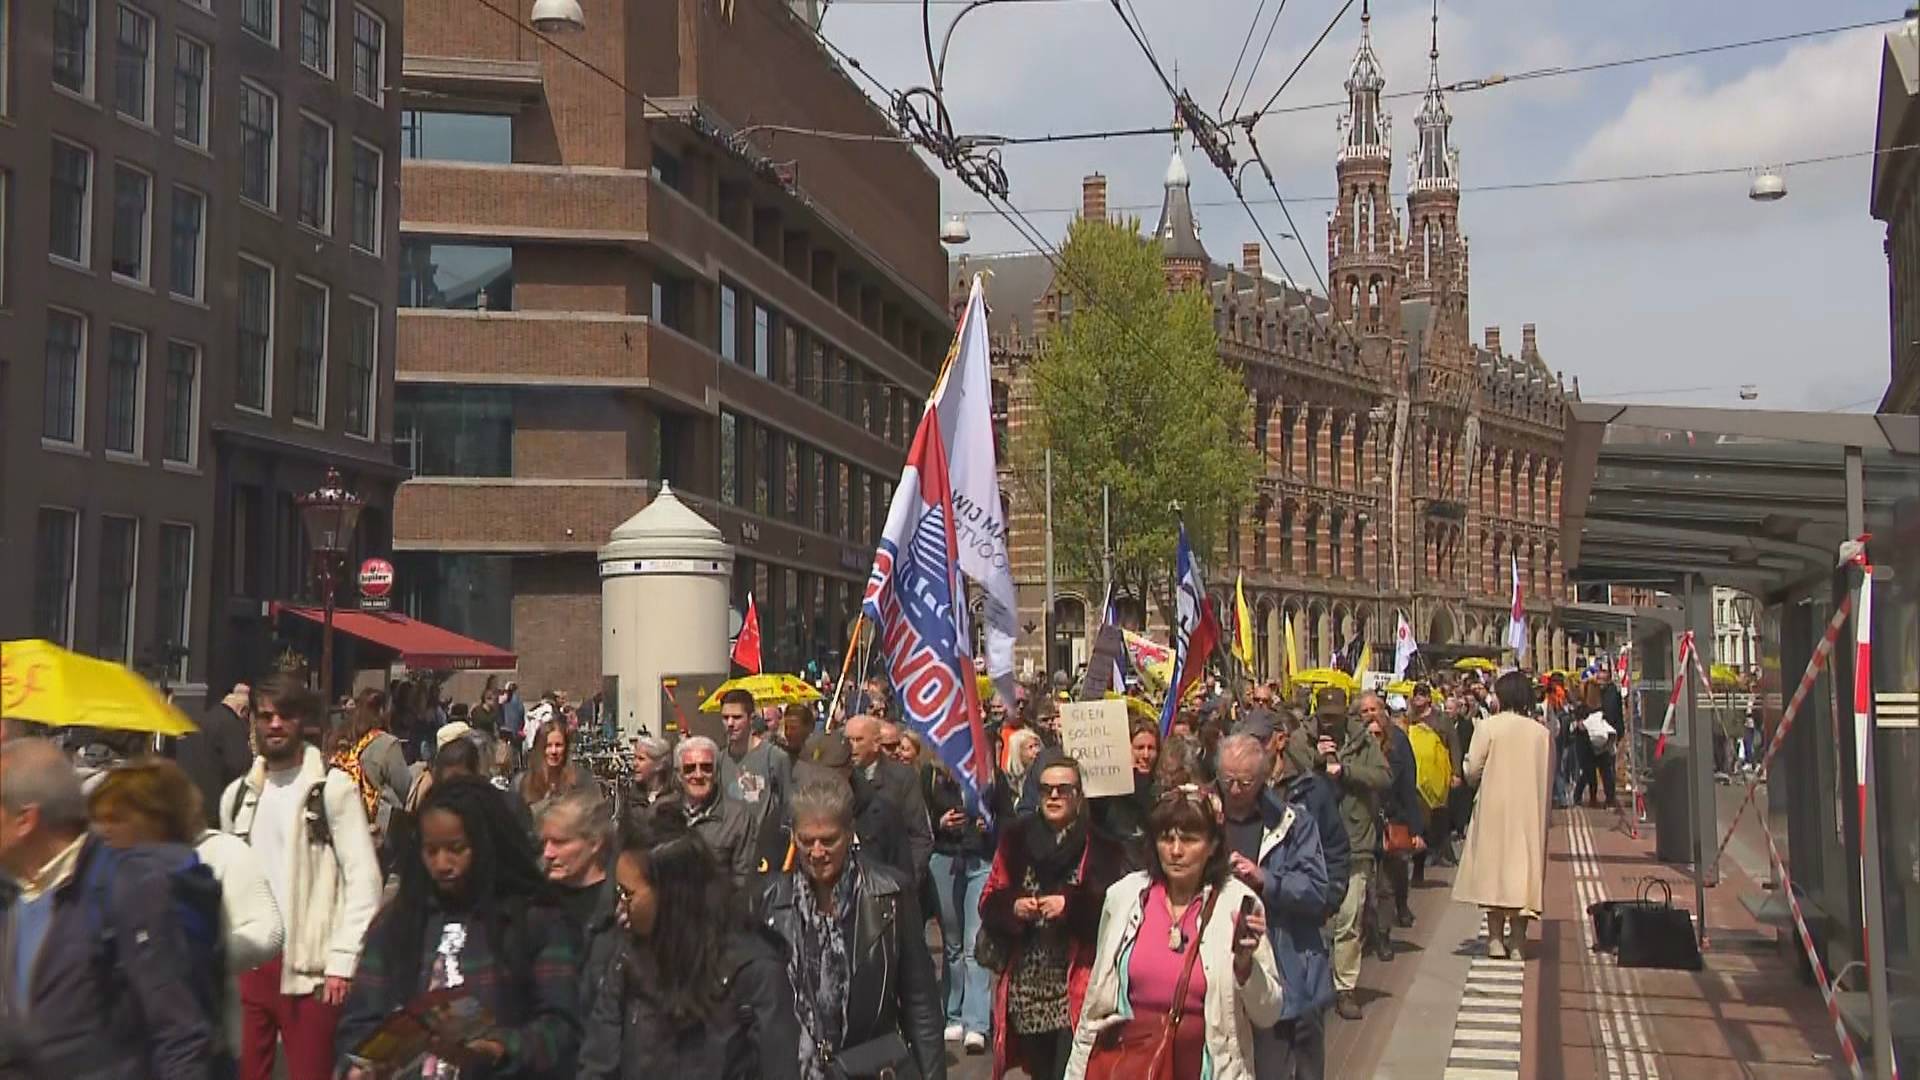 شارك أكثر من ألف شخص في مسيرة احتجاجية ضد روته في أمستردام